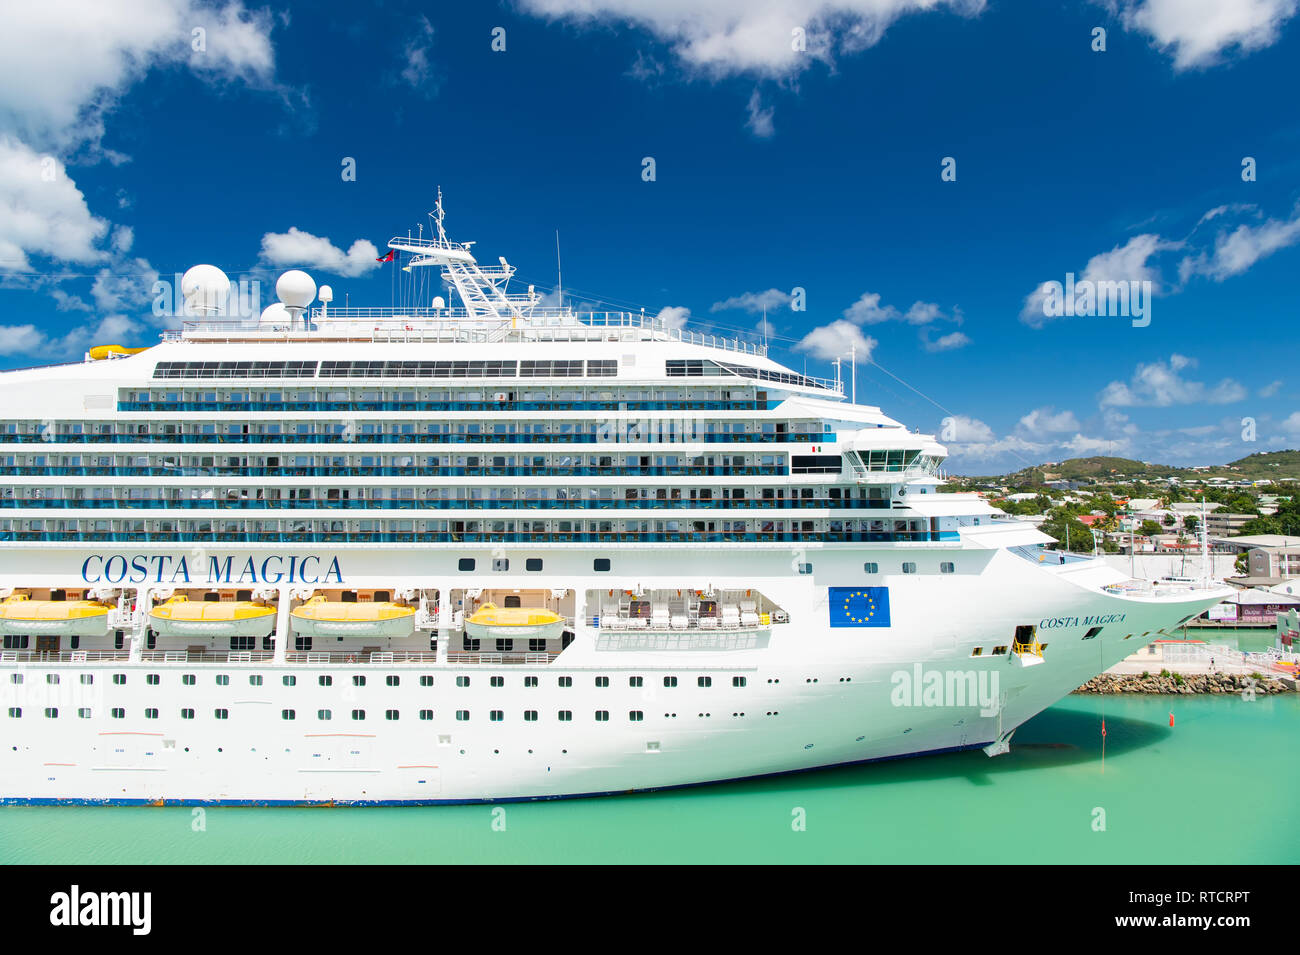 St Johns, Antigua - Marzo 05, 2016: nave da crociera Costa Magica ormeggiata nel porto di mare. Viaggi, vacanze e wanderlust di lusso. Foto Stock